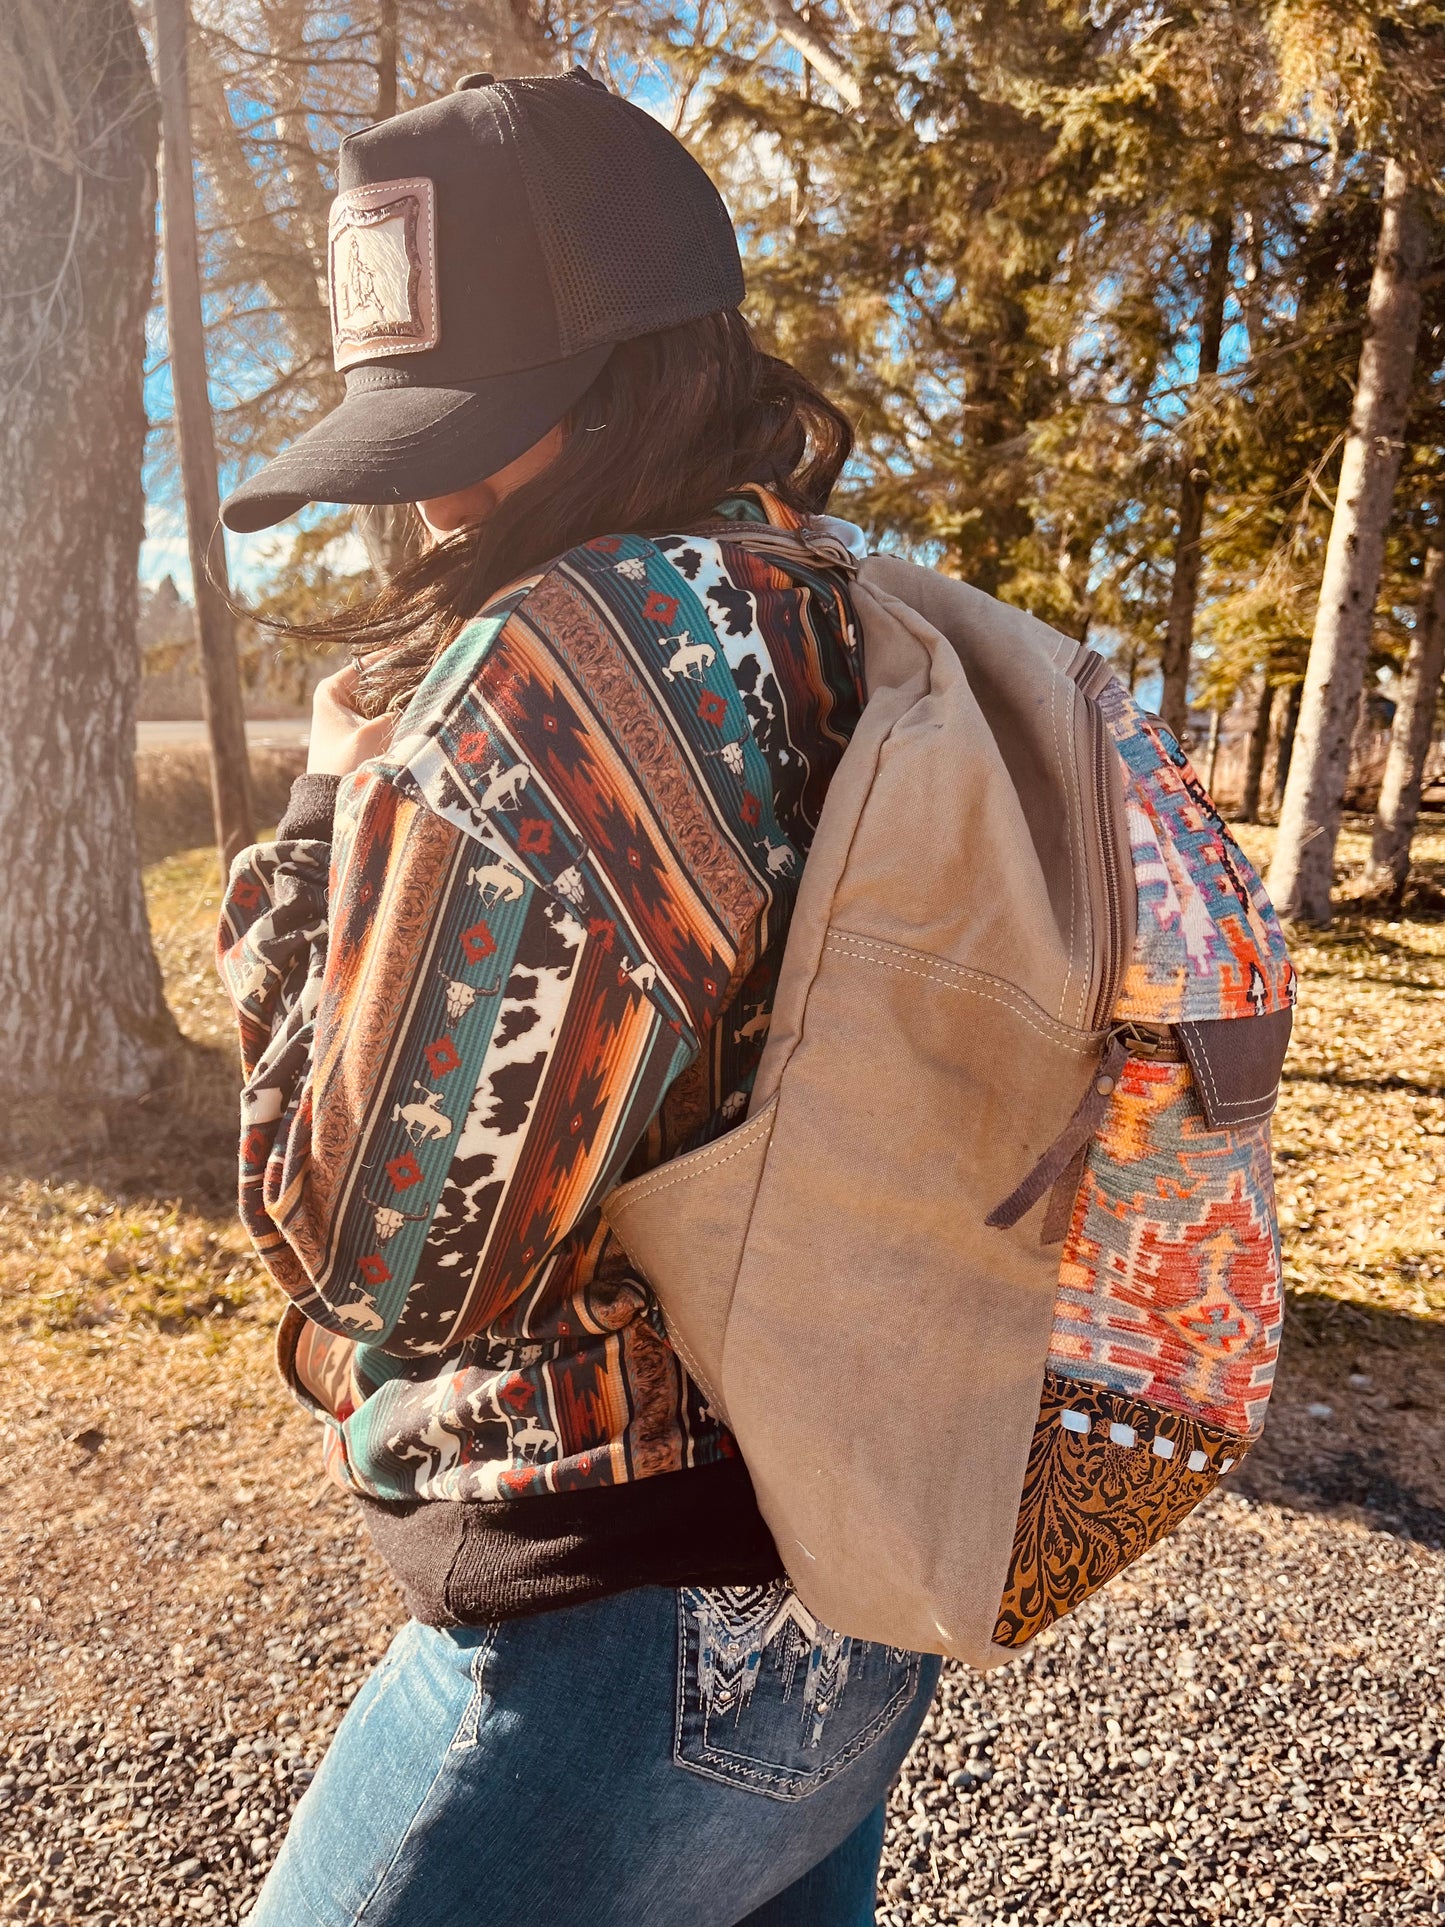 Southwestern style backpack